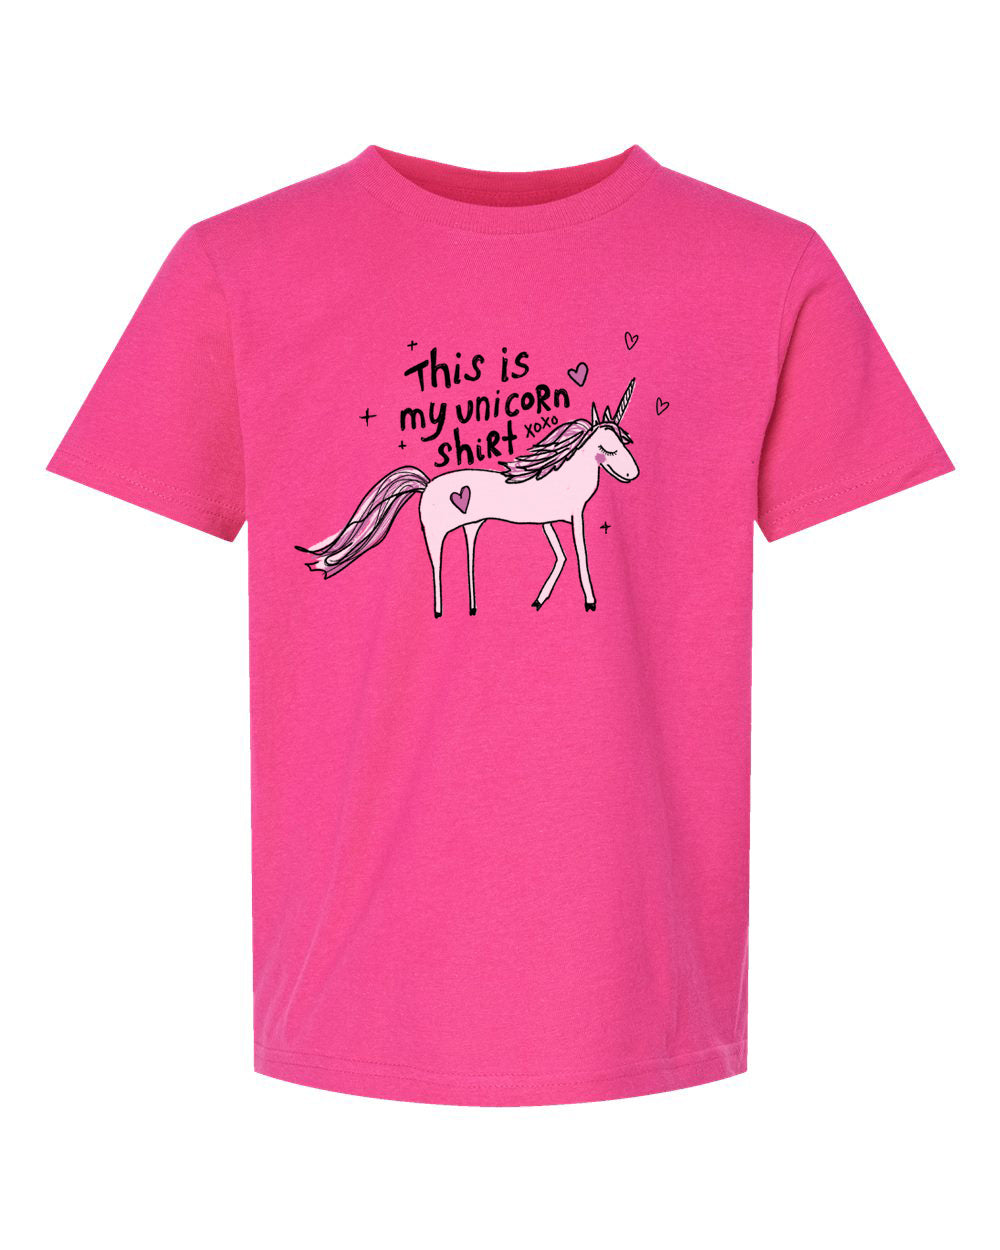 Unicorn Shirt : Kids Tee